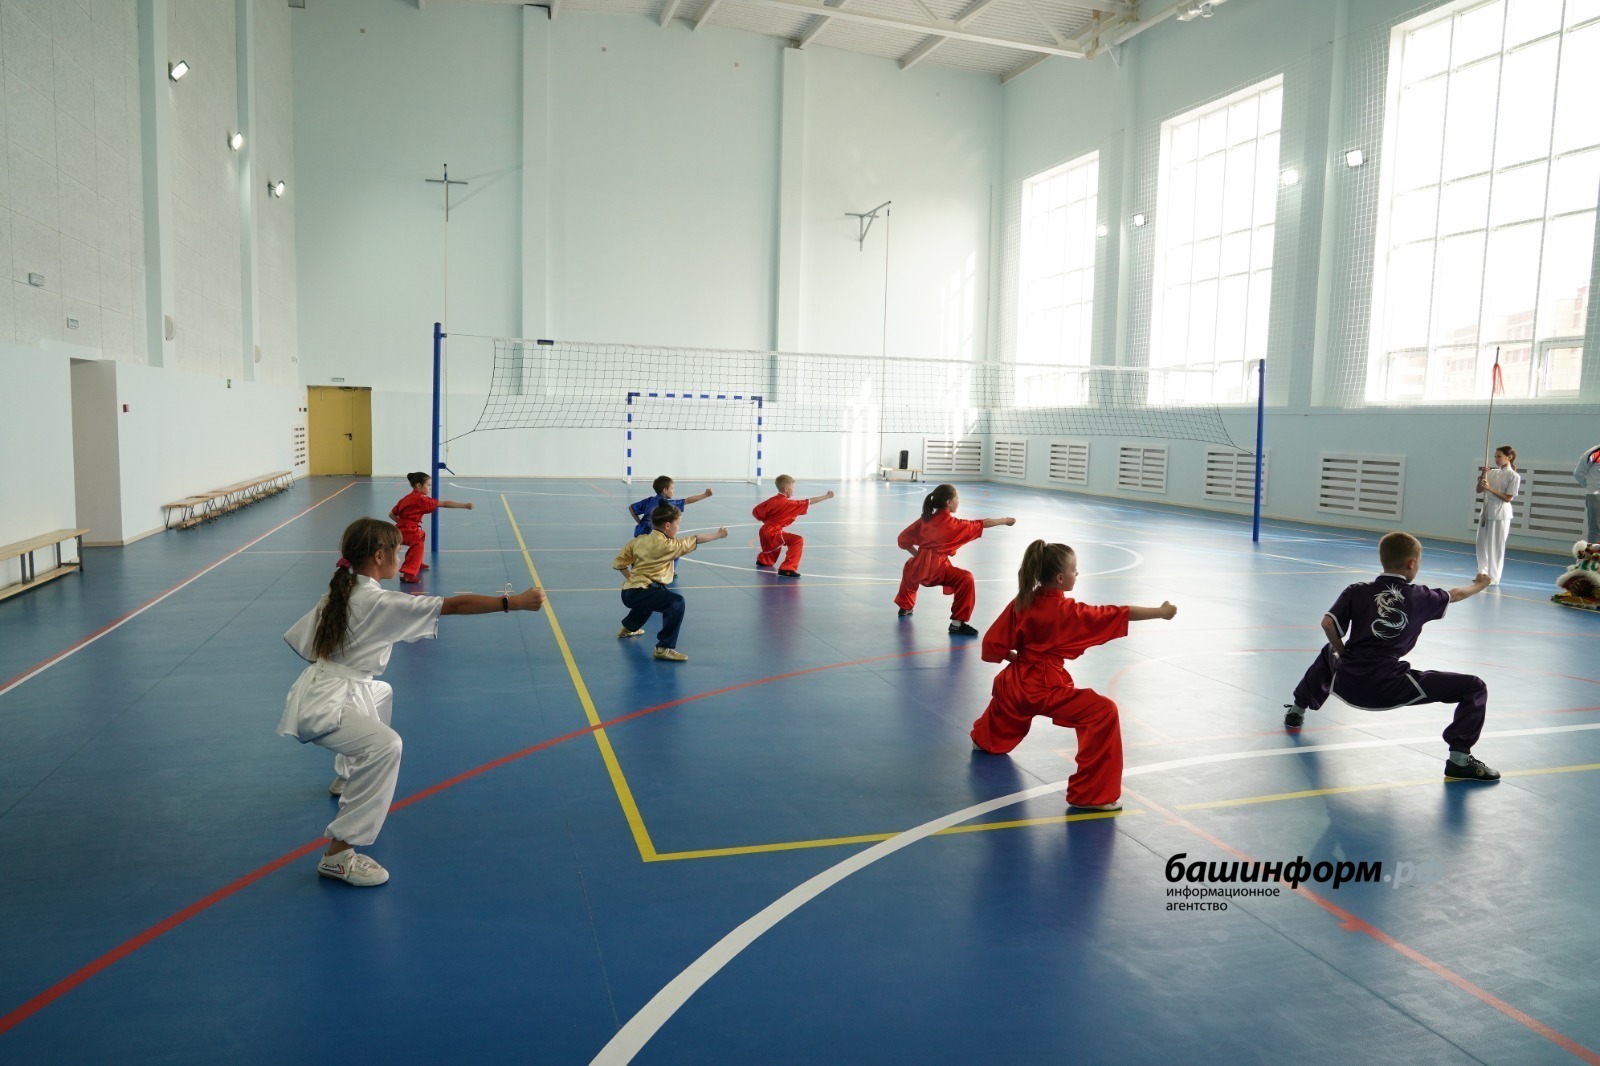 Радий Хабиров: Доступность занятий спортом для детей - задача на ближайшие годы